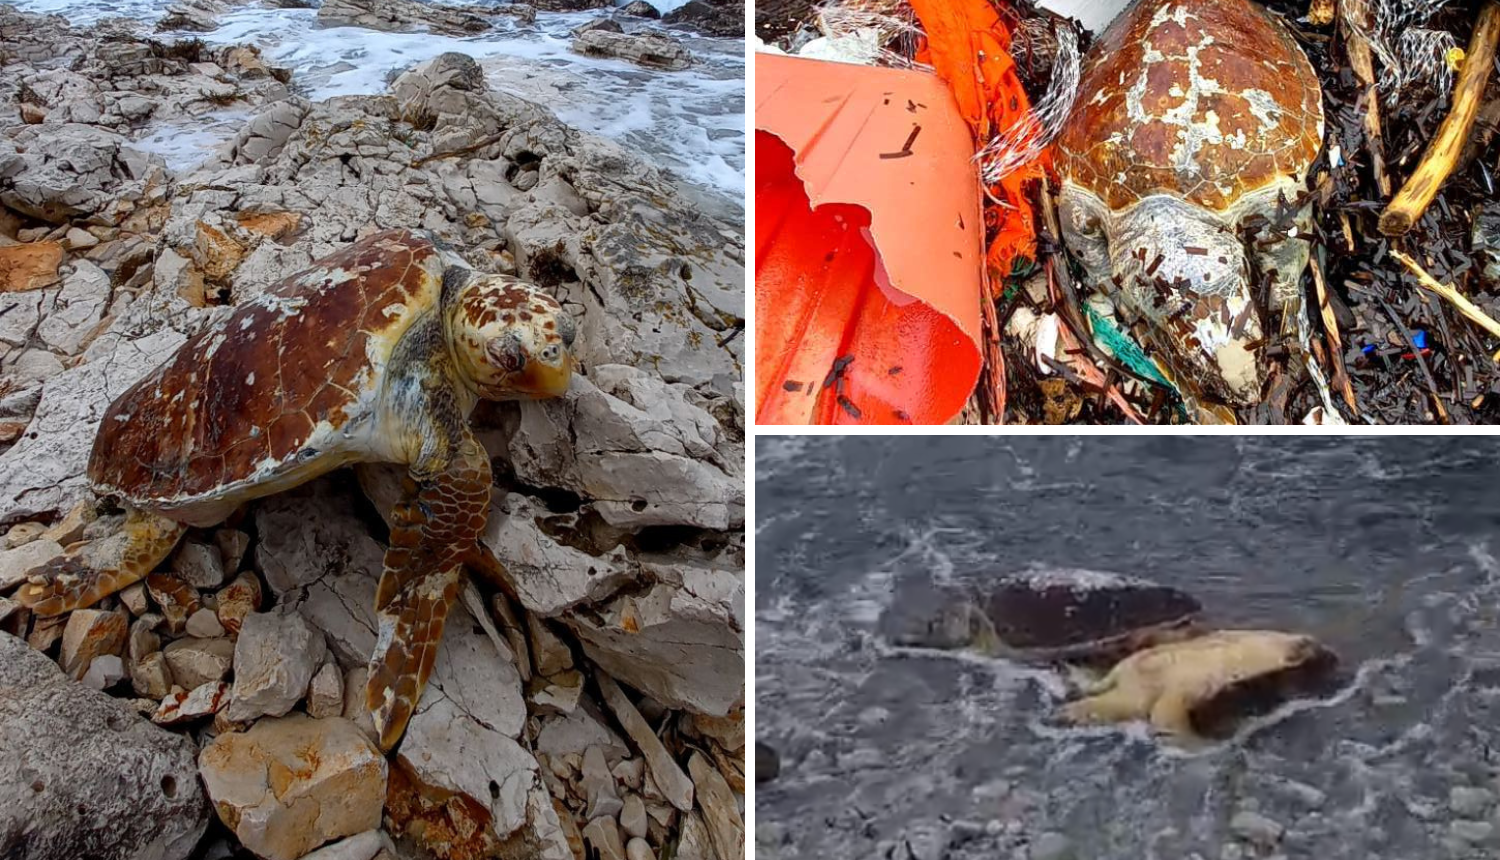 Patolozi otkrili kako su želve nastradale kod plaže Sakarun